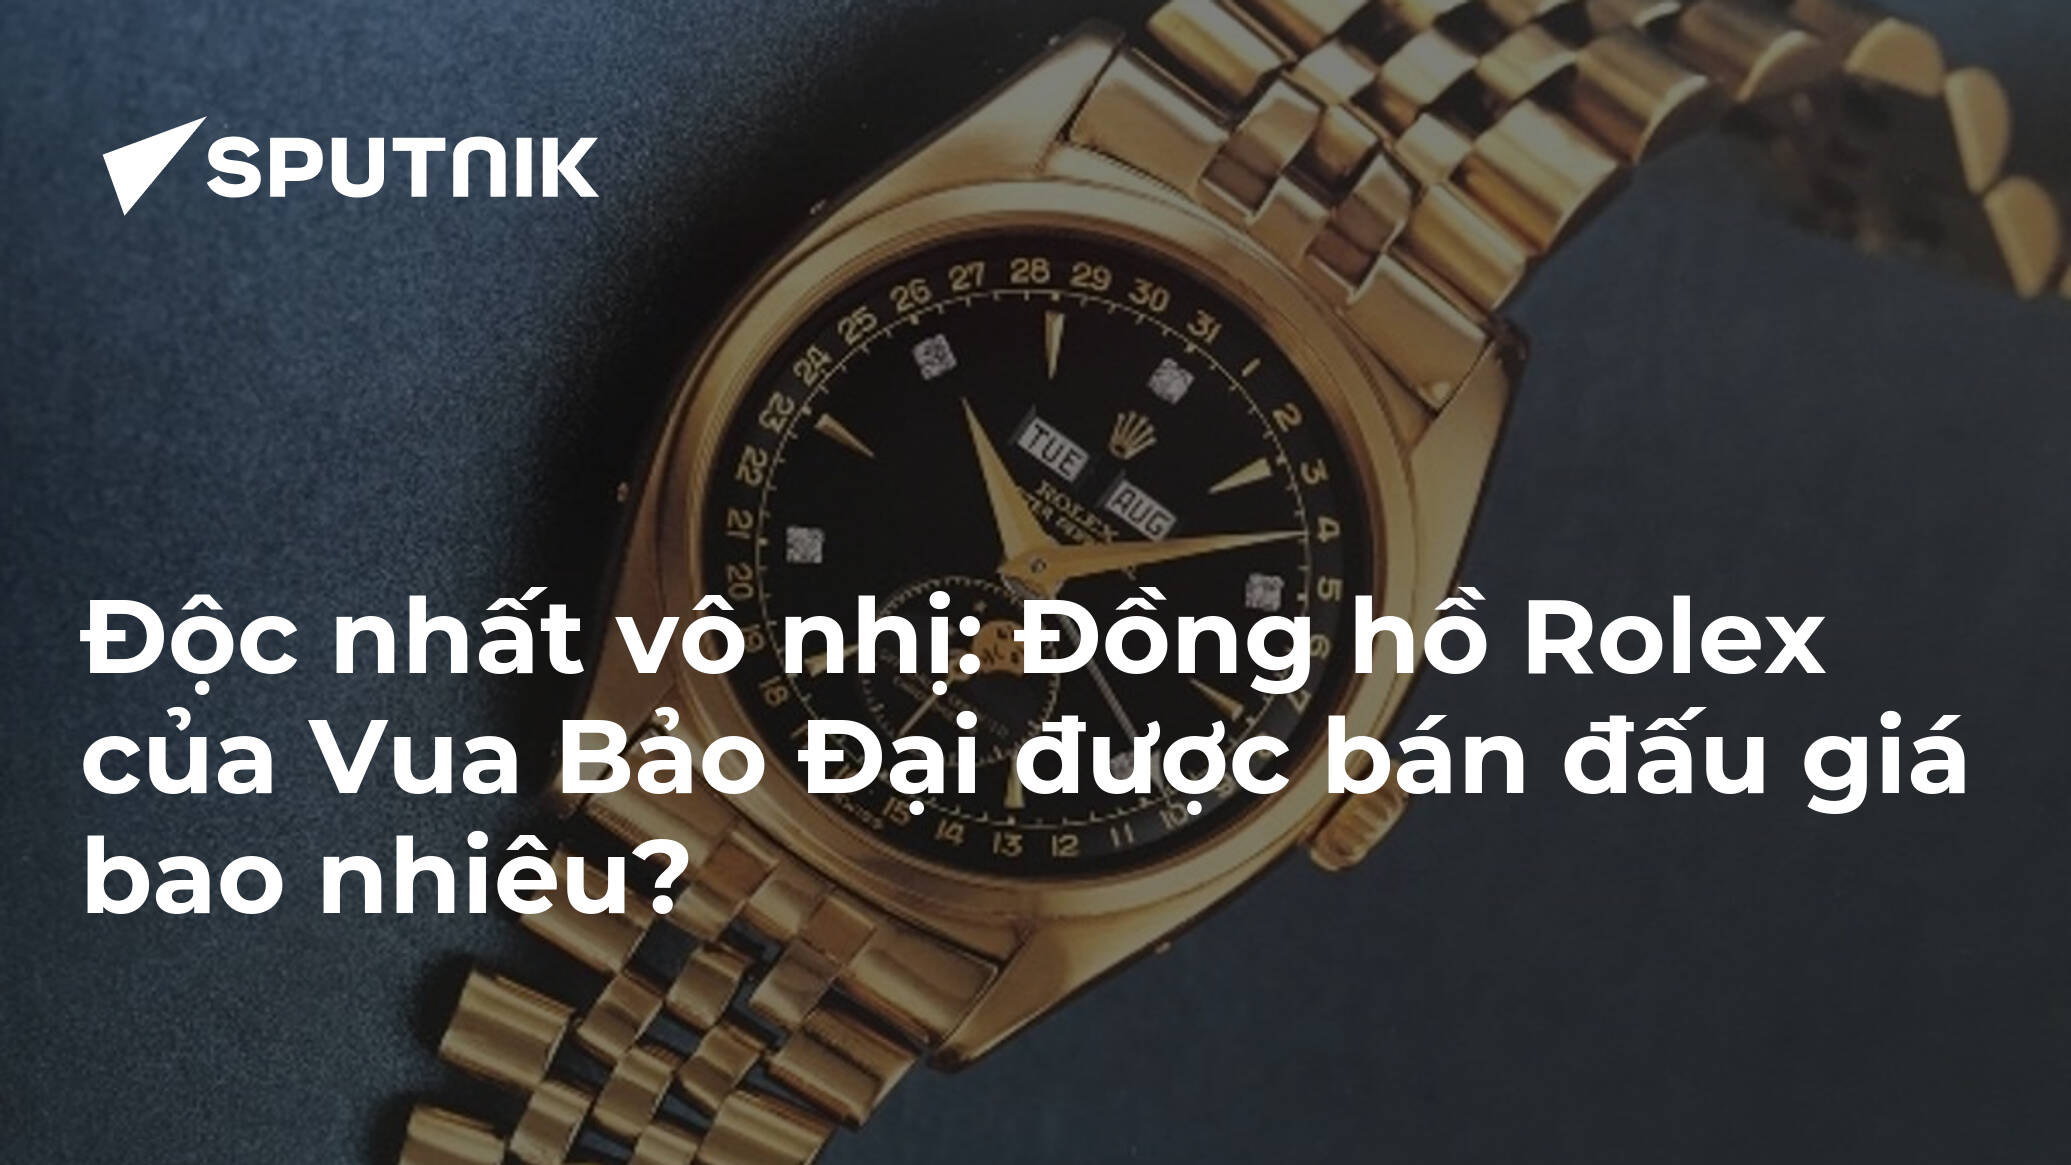 Cận cảnh đồng hồ Rolex của vua Bảo Đại sắp bán đấu giá